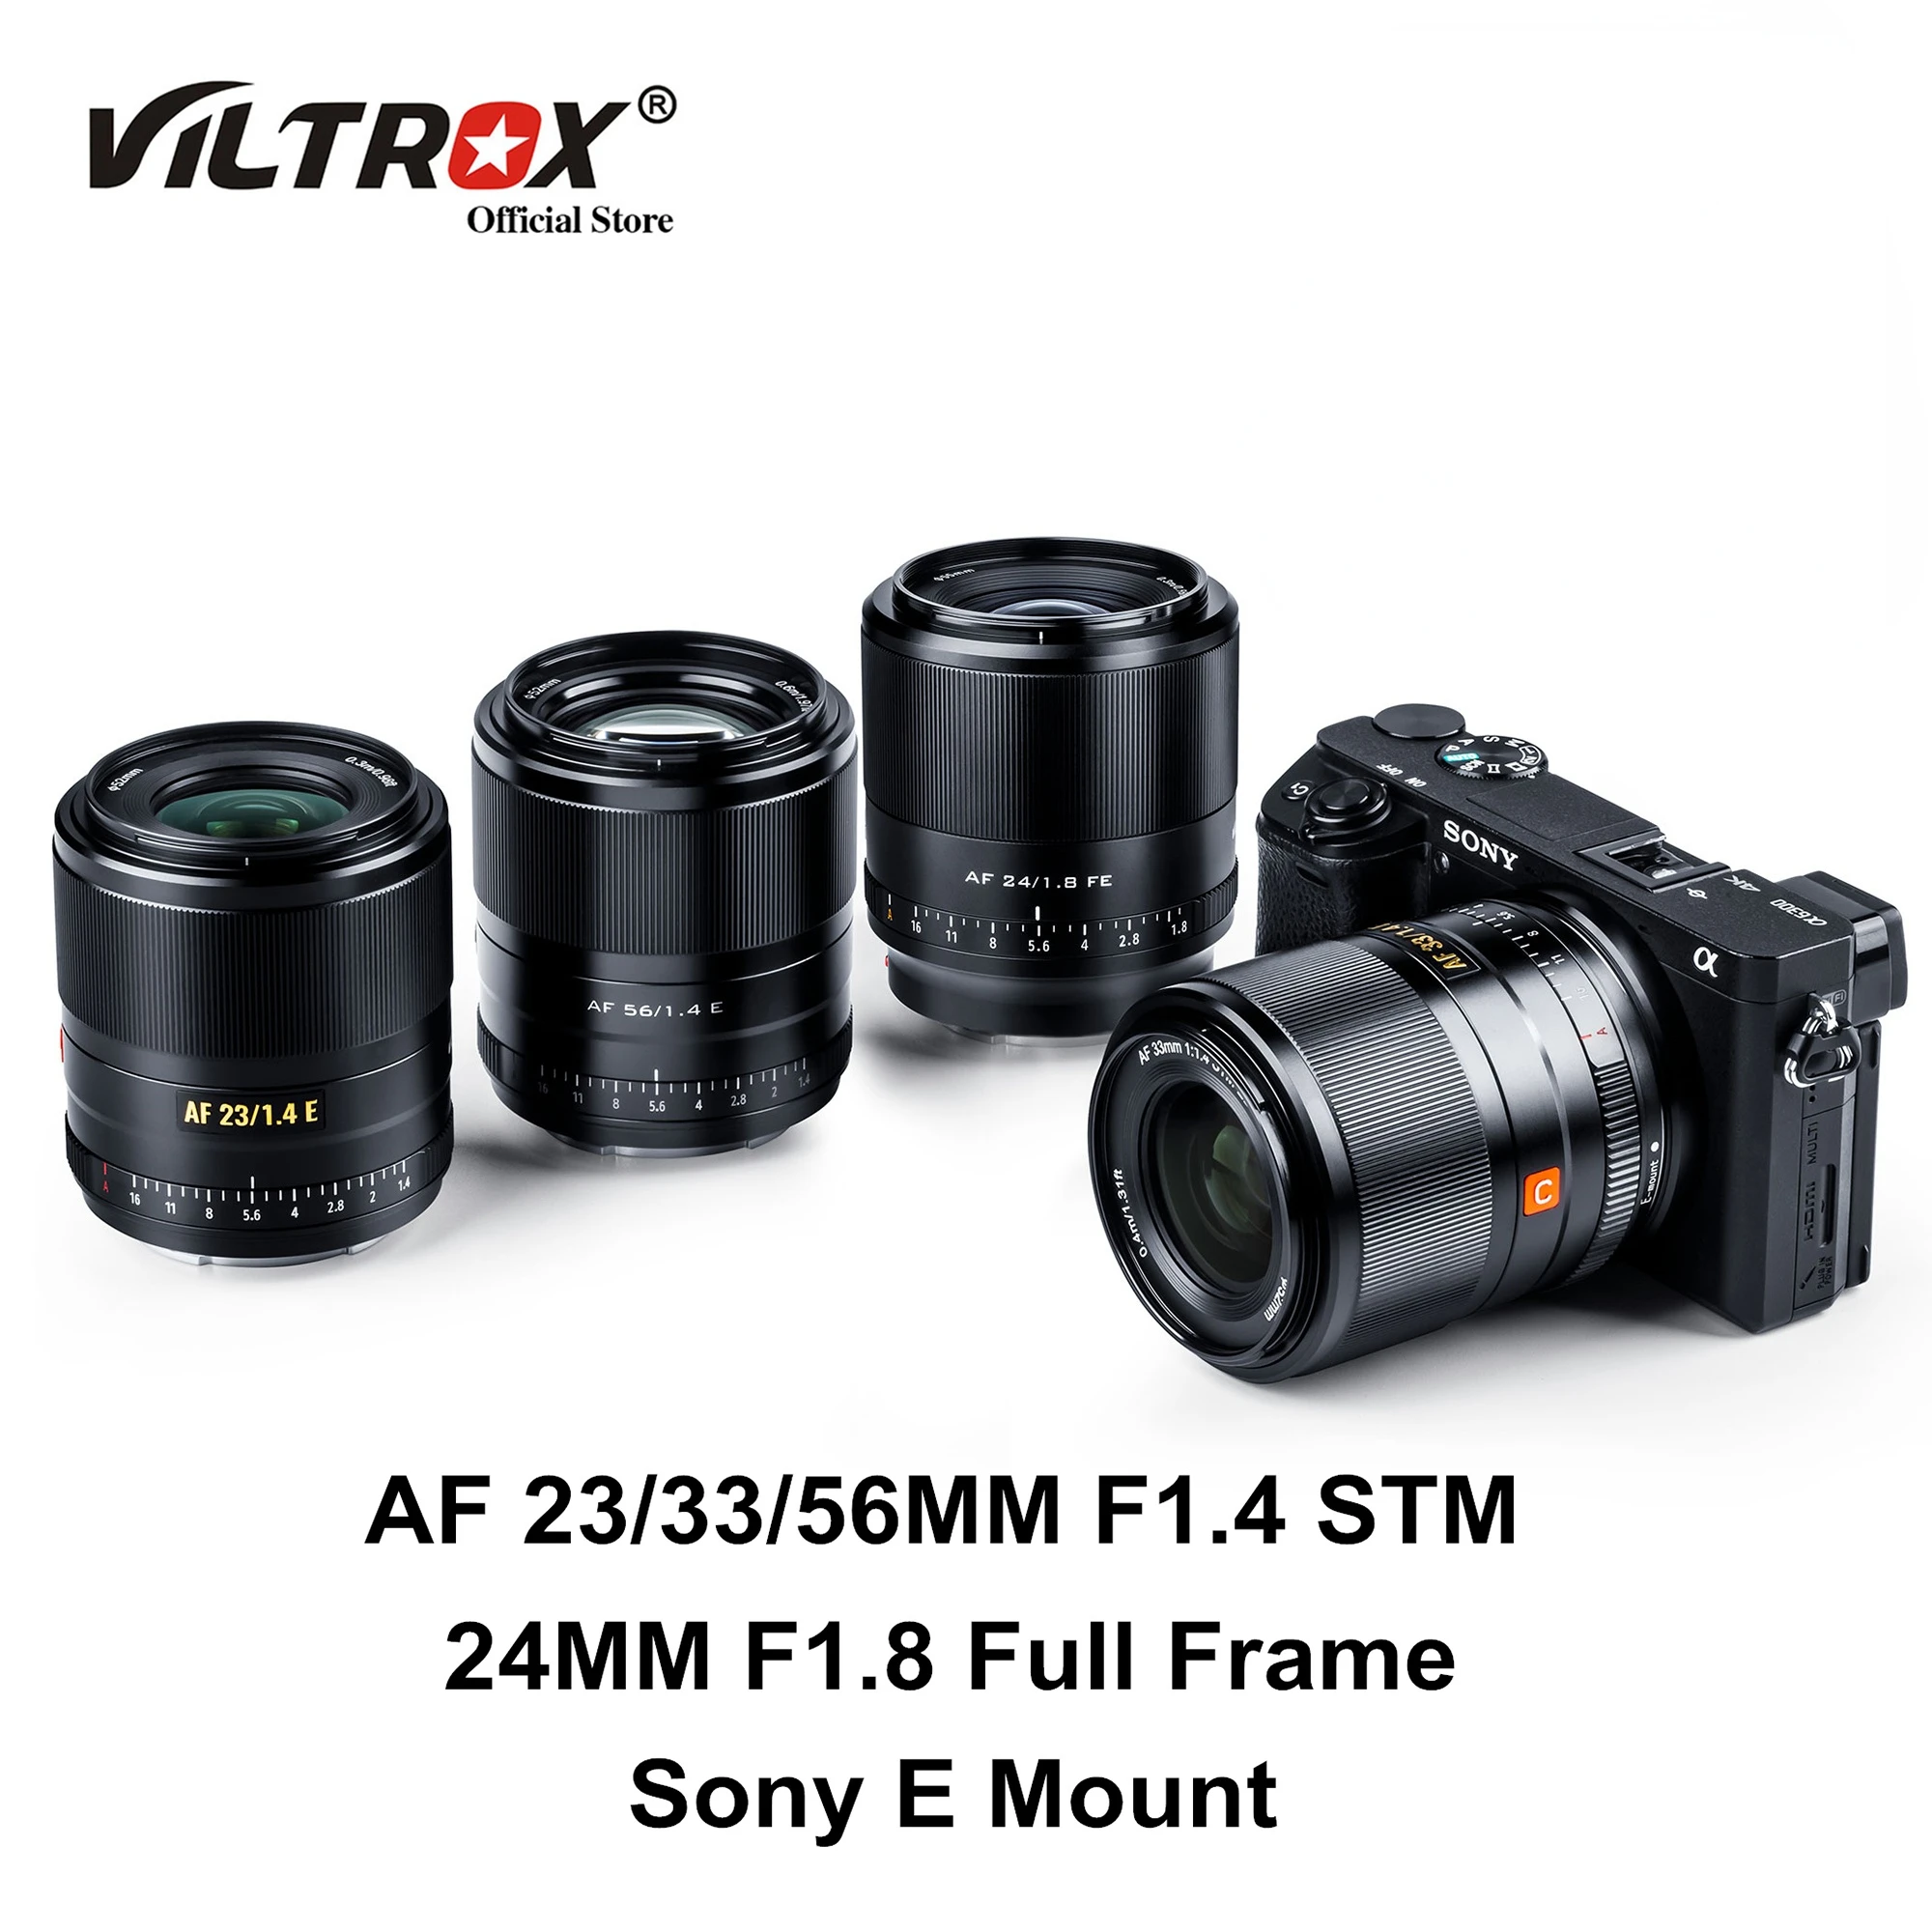 

Viltrox 23 мм 33 мм 56 мм F1.4 объектив с автофокусом и большой диафрагмой 24 мм F1.8 полноразмерные Объективы Prime для Sony E Mount объектив камеры